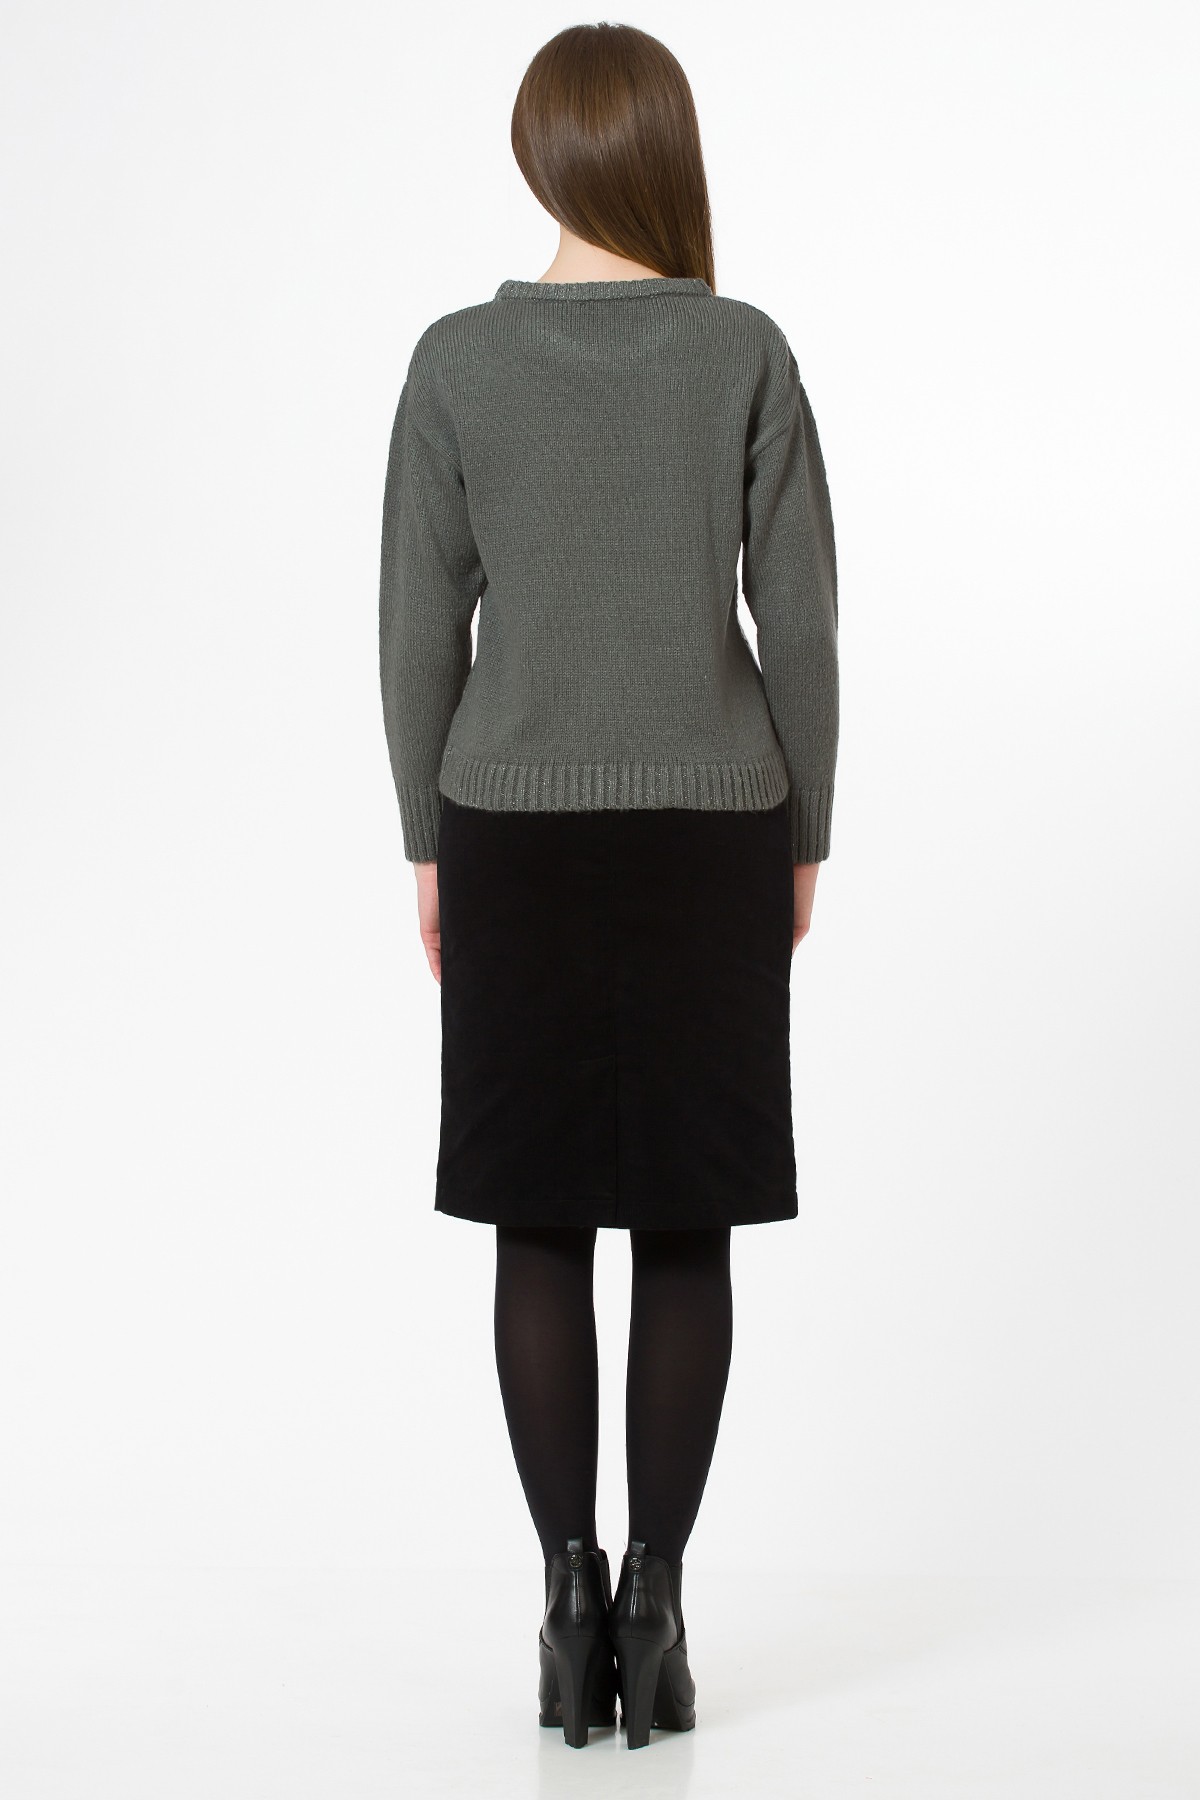 Pulover tricotat Greta fashionsense.ro imagine 2022